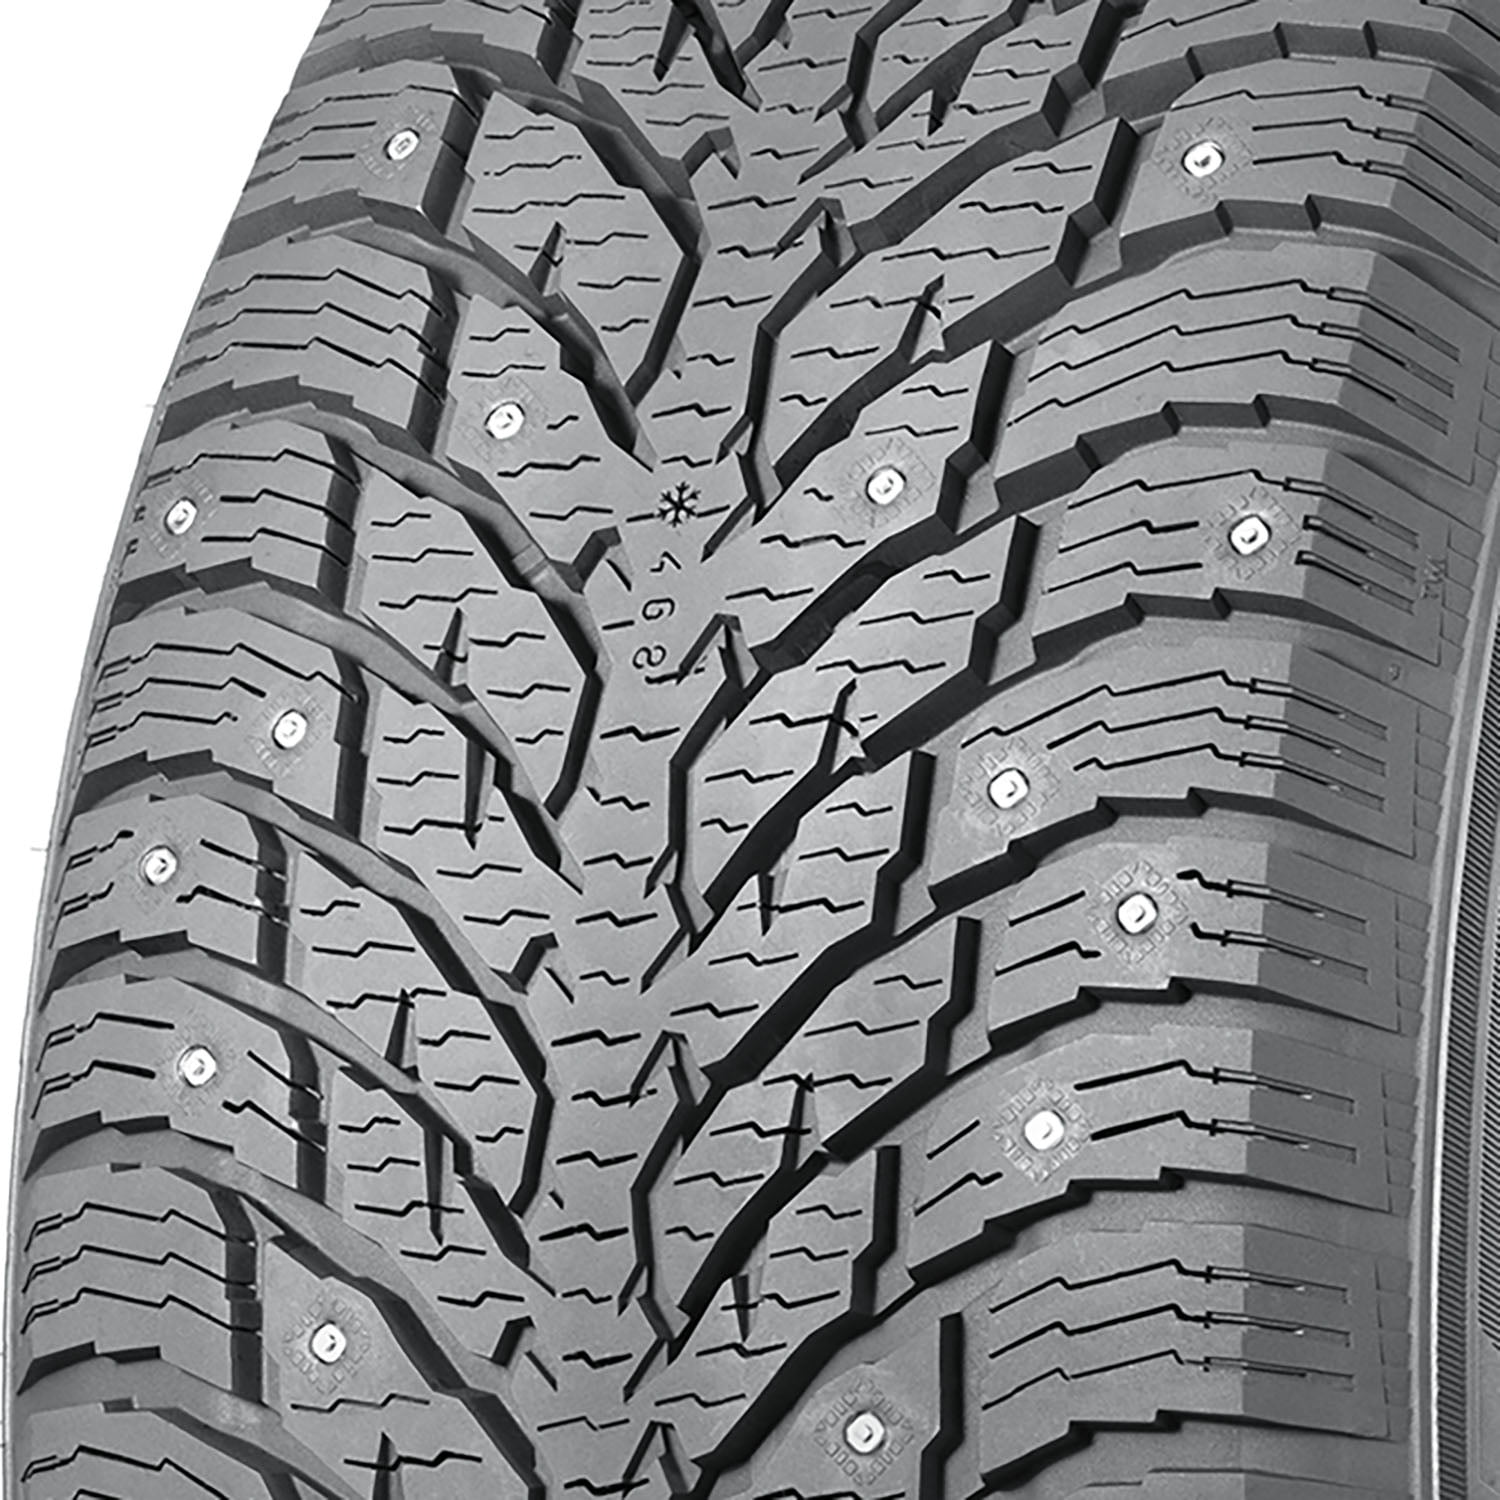 Nokian Hakkapeliitta C4 Winter LT225/70R15 112/110R D Light Truck Tire